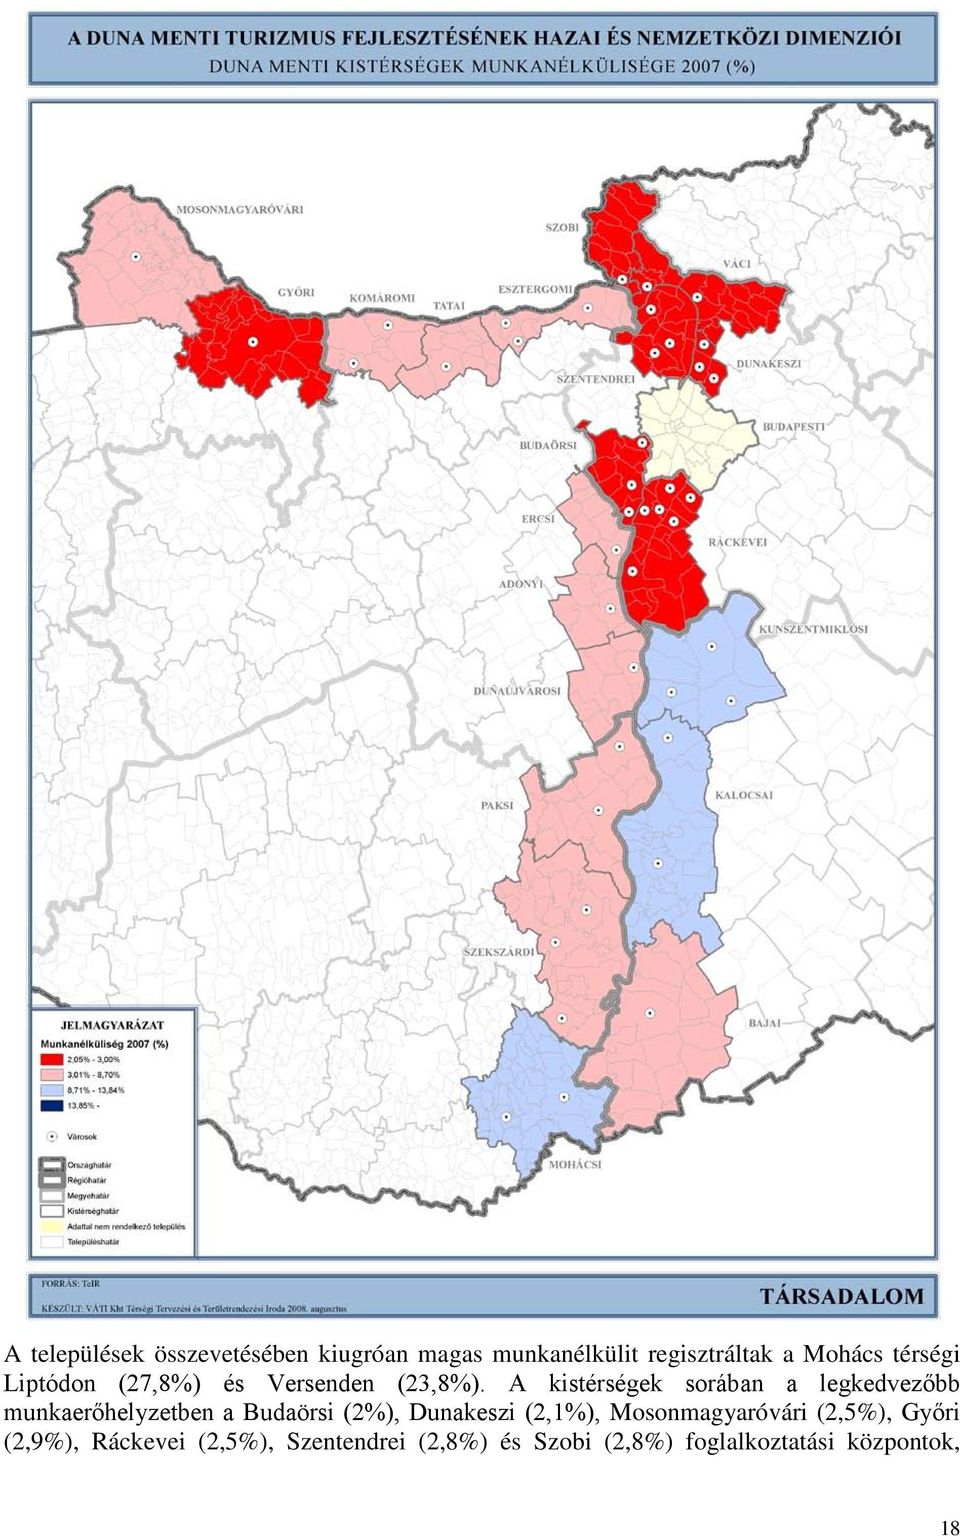 A kistérségek sorában a legkedvezőbb munkaerőhelyzetben a Budaörsi (2%), Dunakeszi